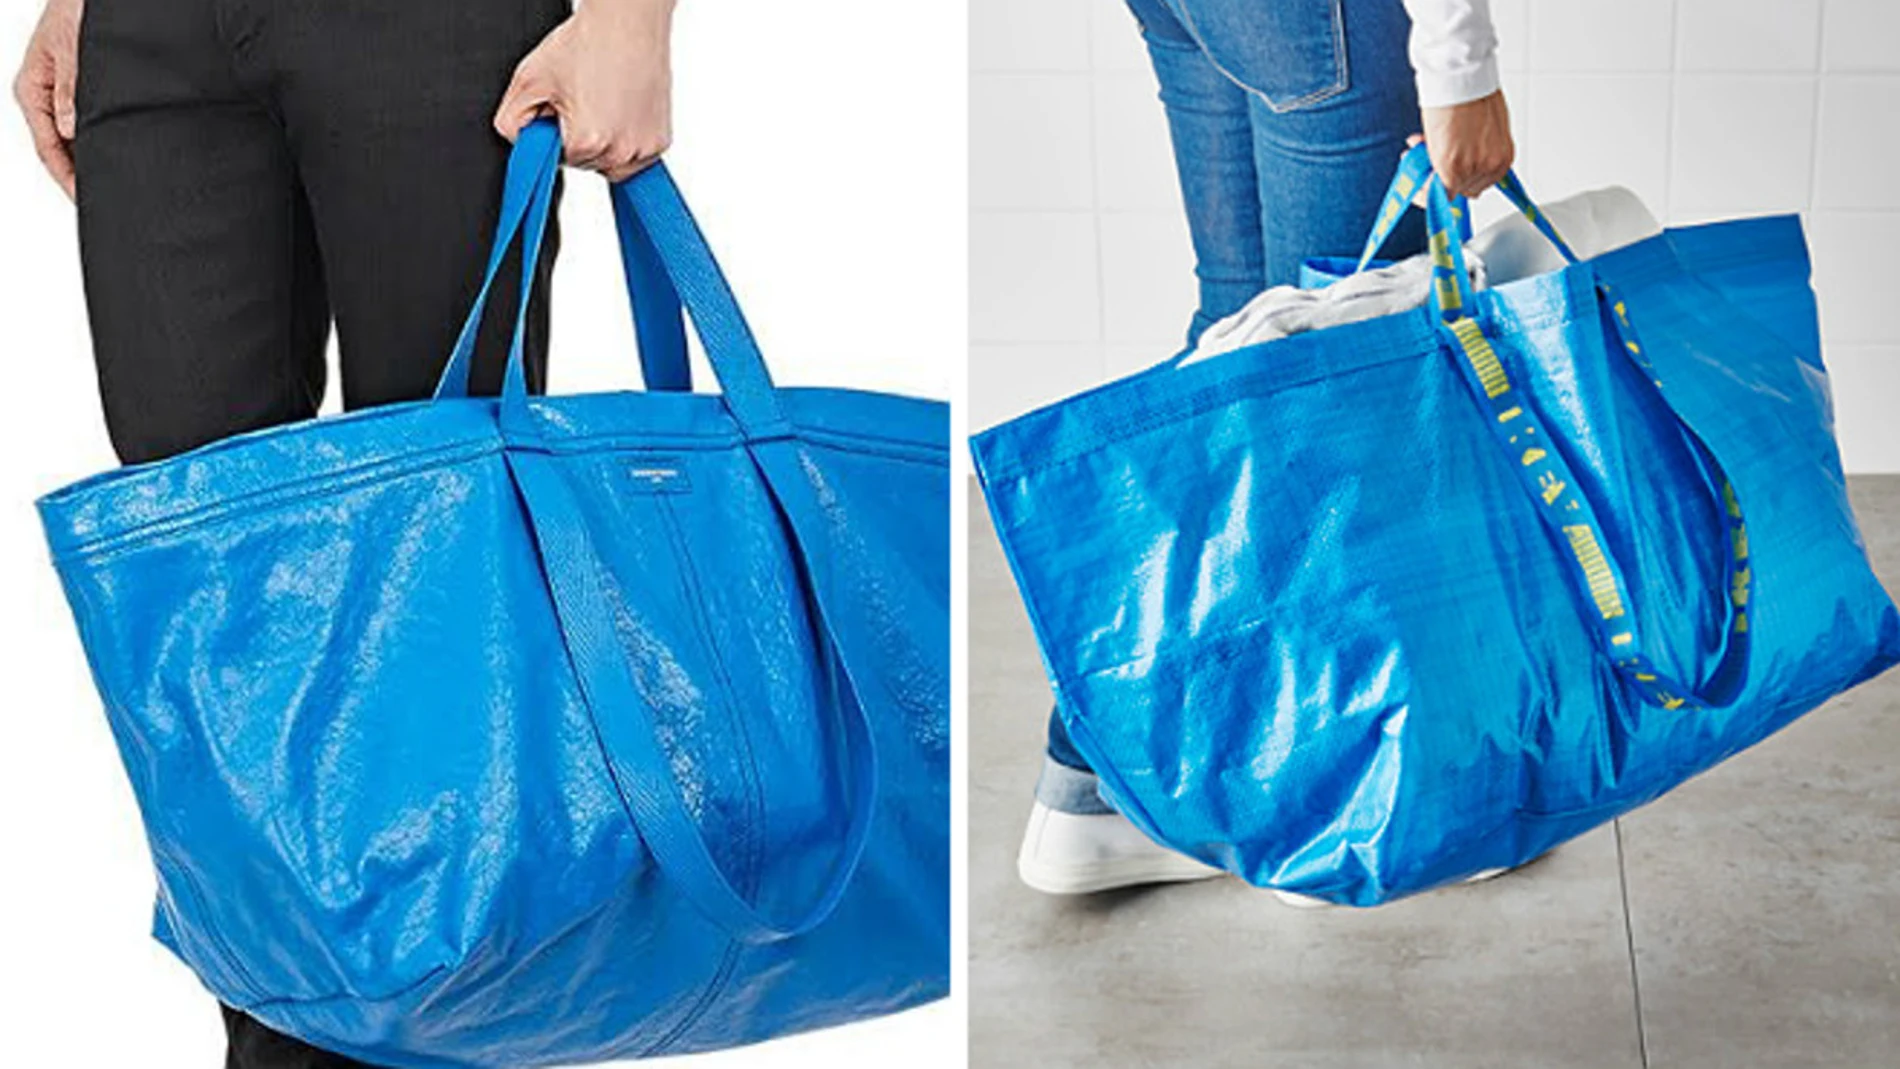 Collar borde brillante Las instrucciones de Ikea para que sus clientes no confundan su bolsa con  el bolso de Balenciaga: "Si cruje, es la verdadera"